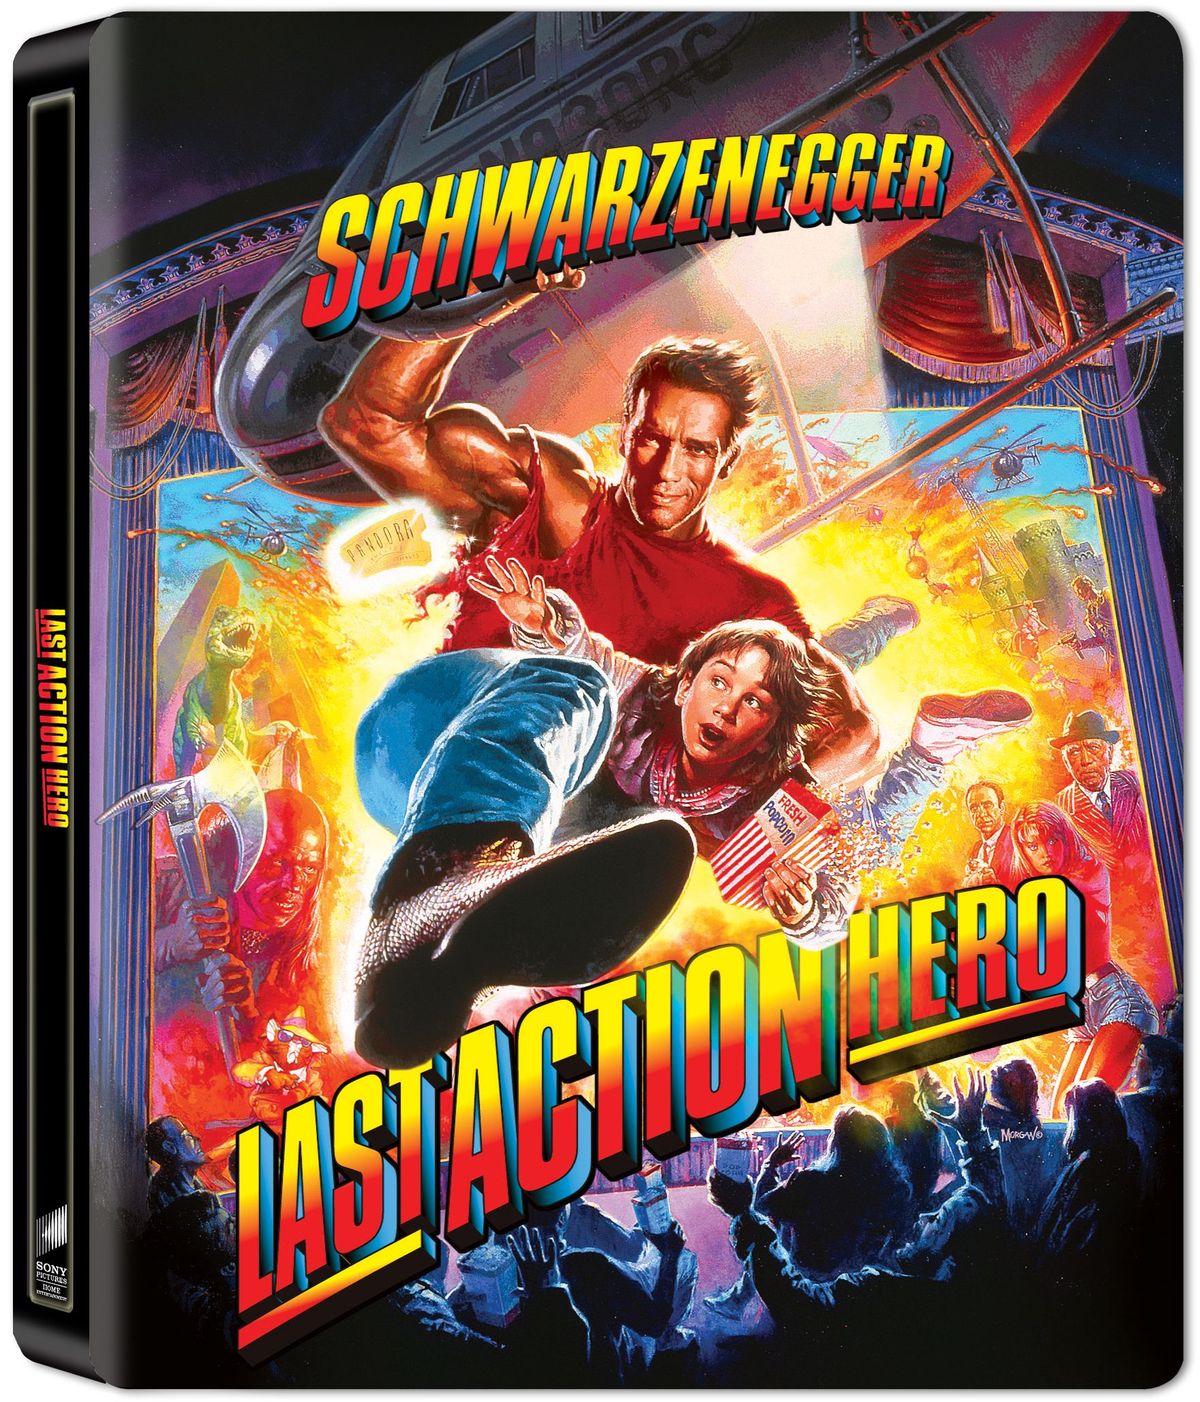 Último Action Hero lança um lançamento em Blu-ray 4K UHD